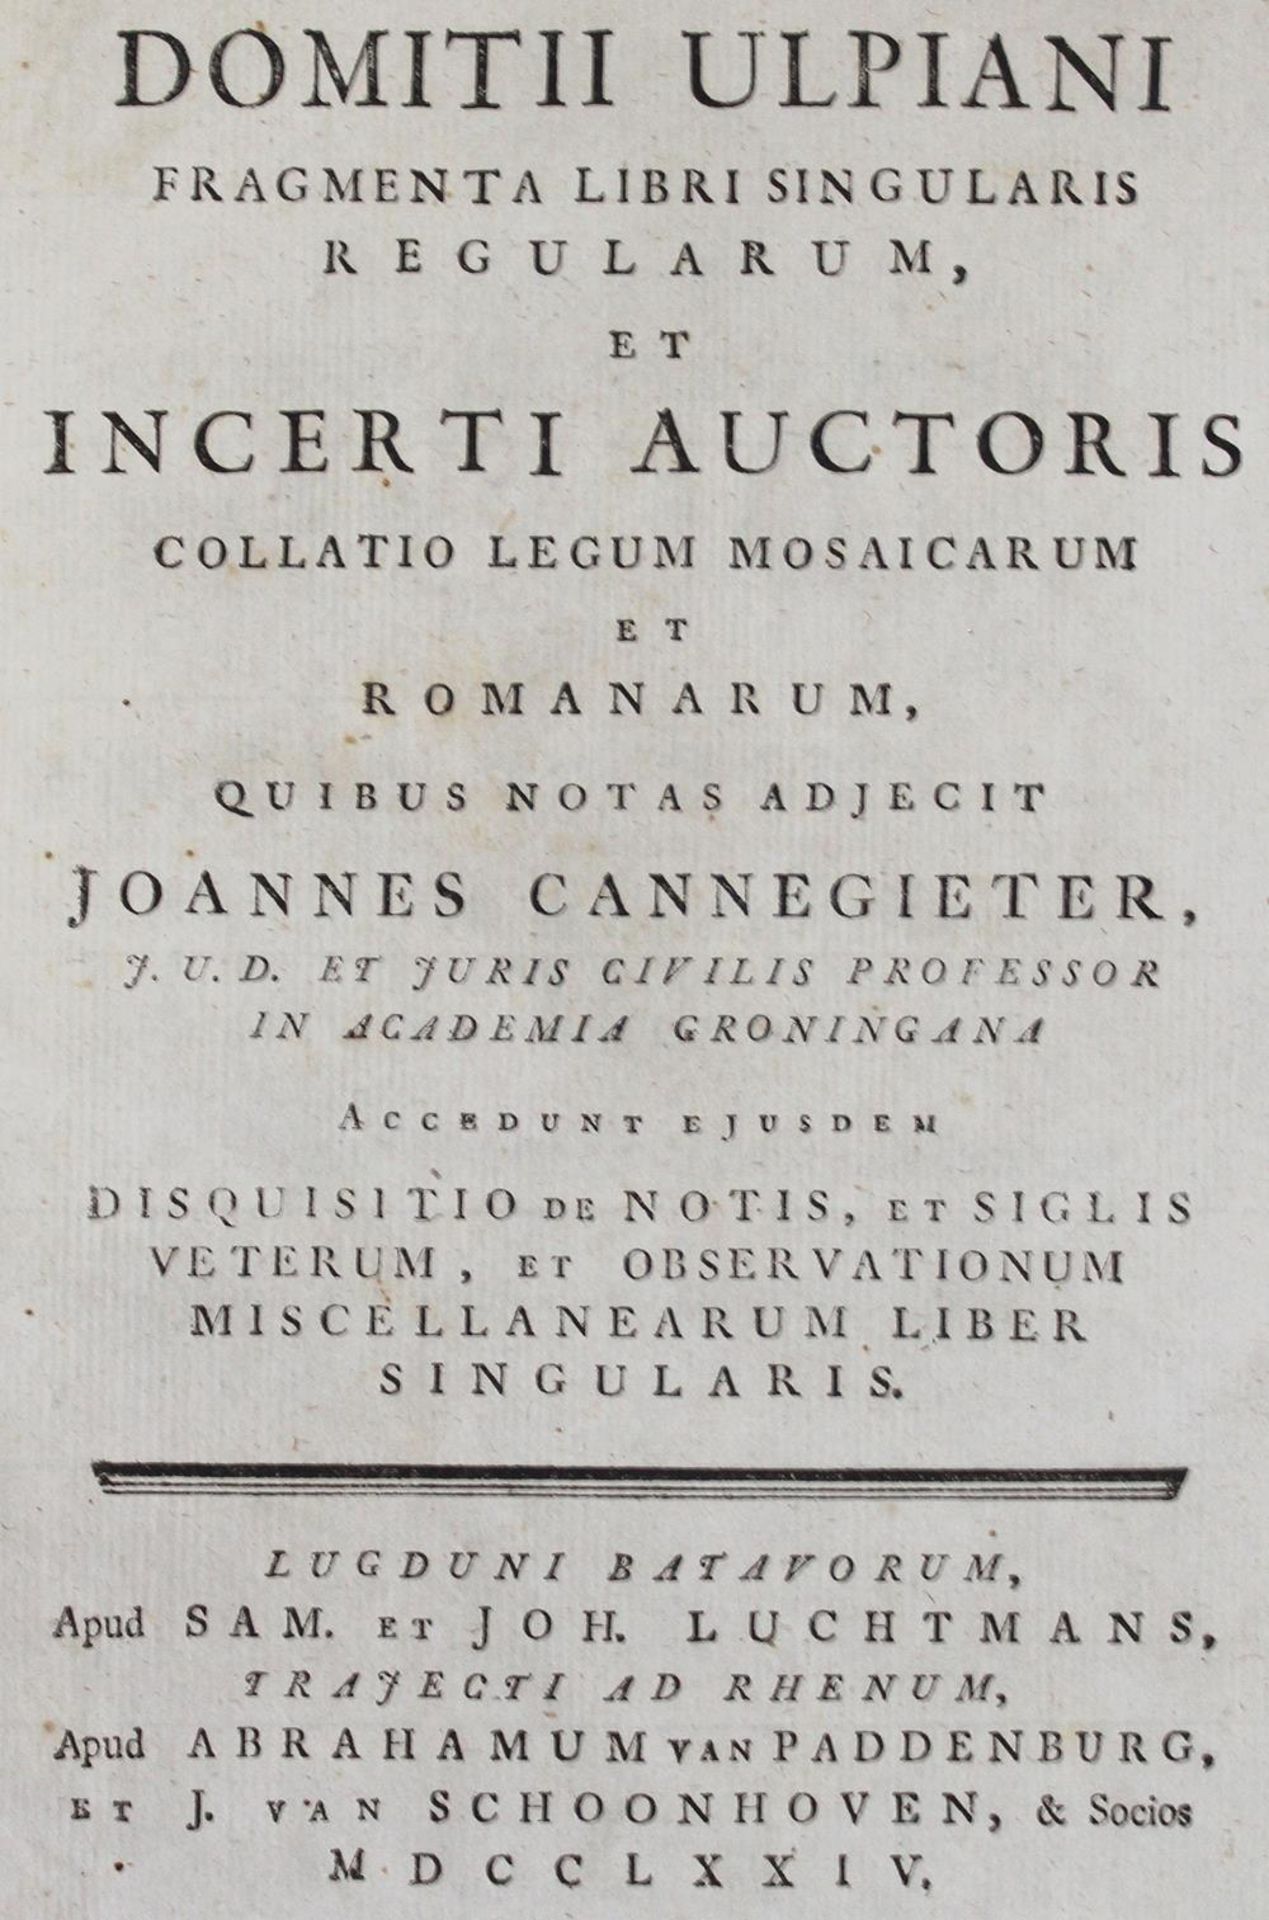 Ulpianus,D.Ulpianus,D. Fragmenta libri singularis regularum, et incerti auctoris collatUlpi